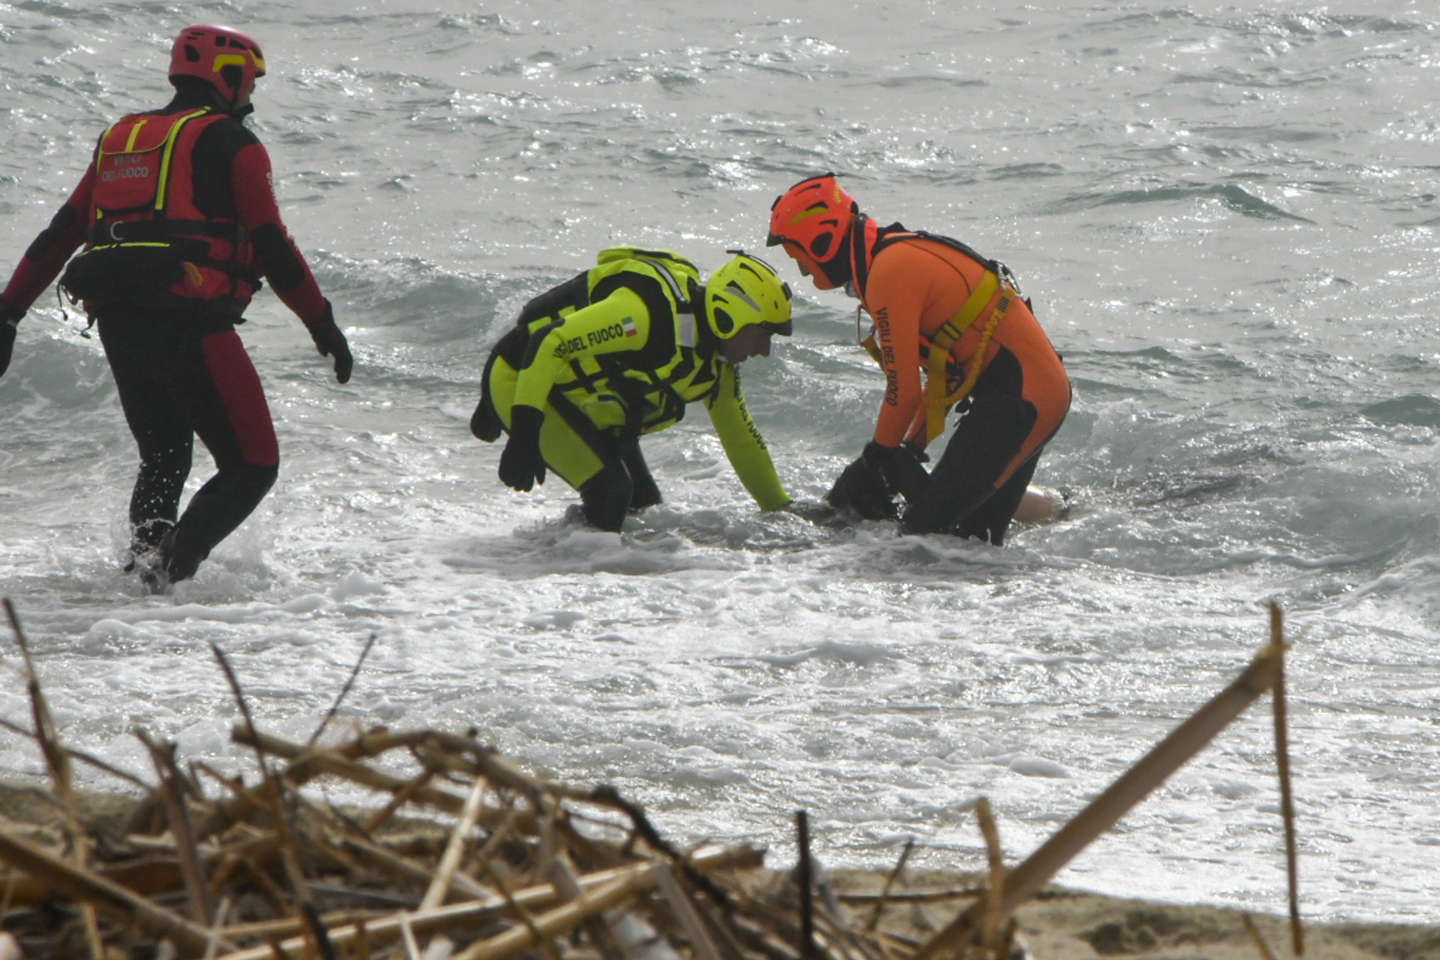 Italie : au moins 31 migrants sont morts dans le naufrage de leur embarcation près des côtes